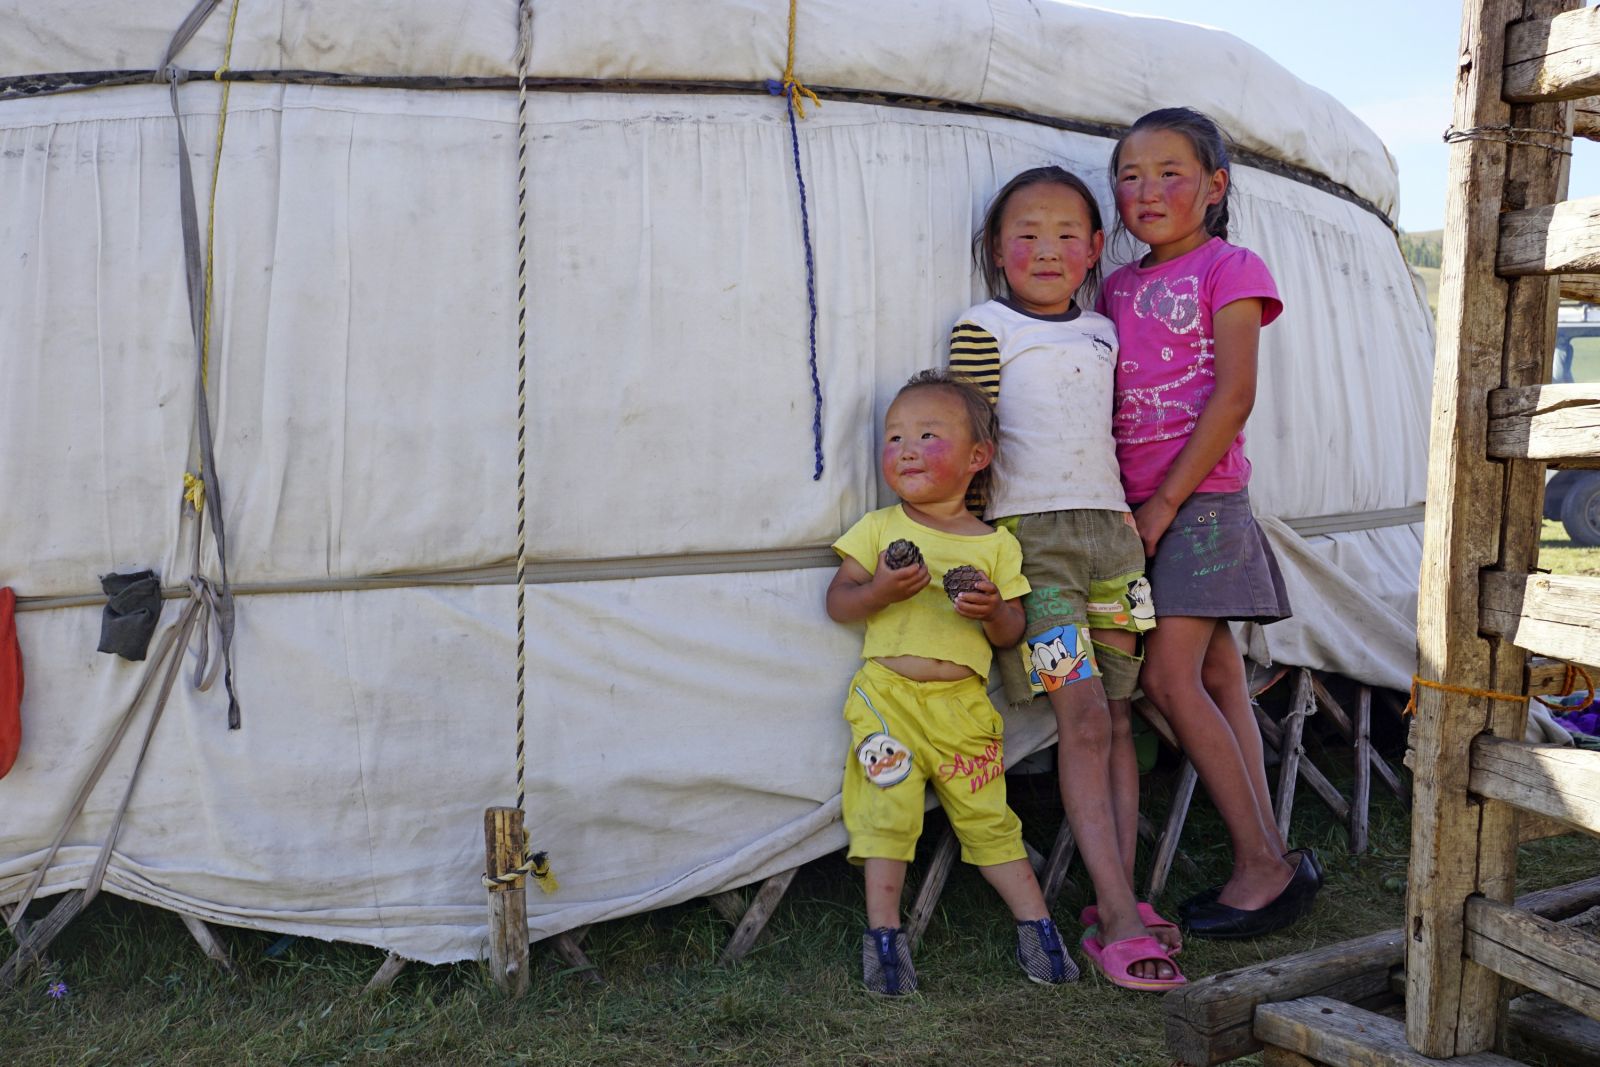 Neugierig und schüchtern zugleich – die Kinder einer Nomadenfamilie